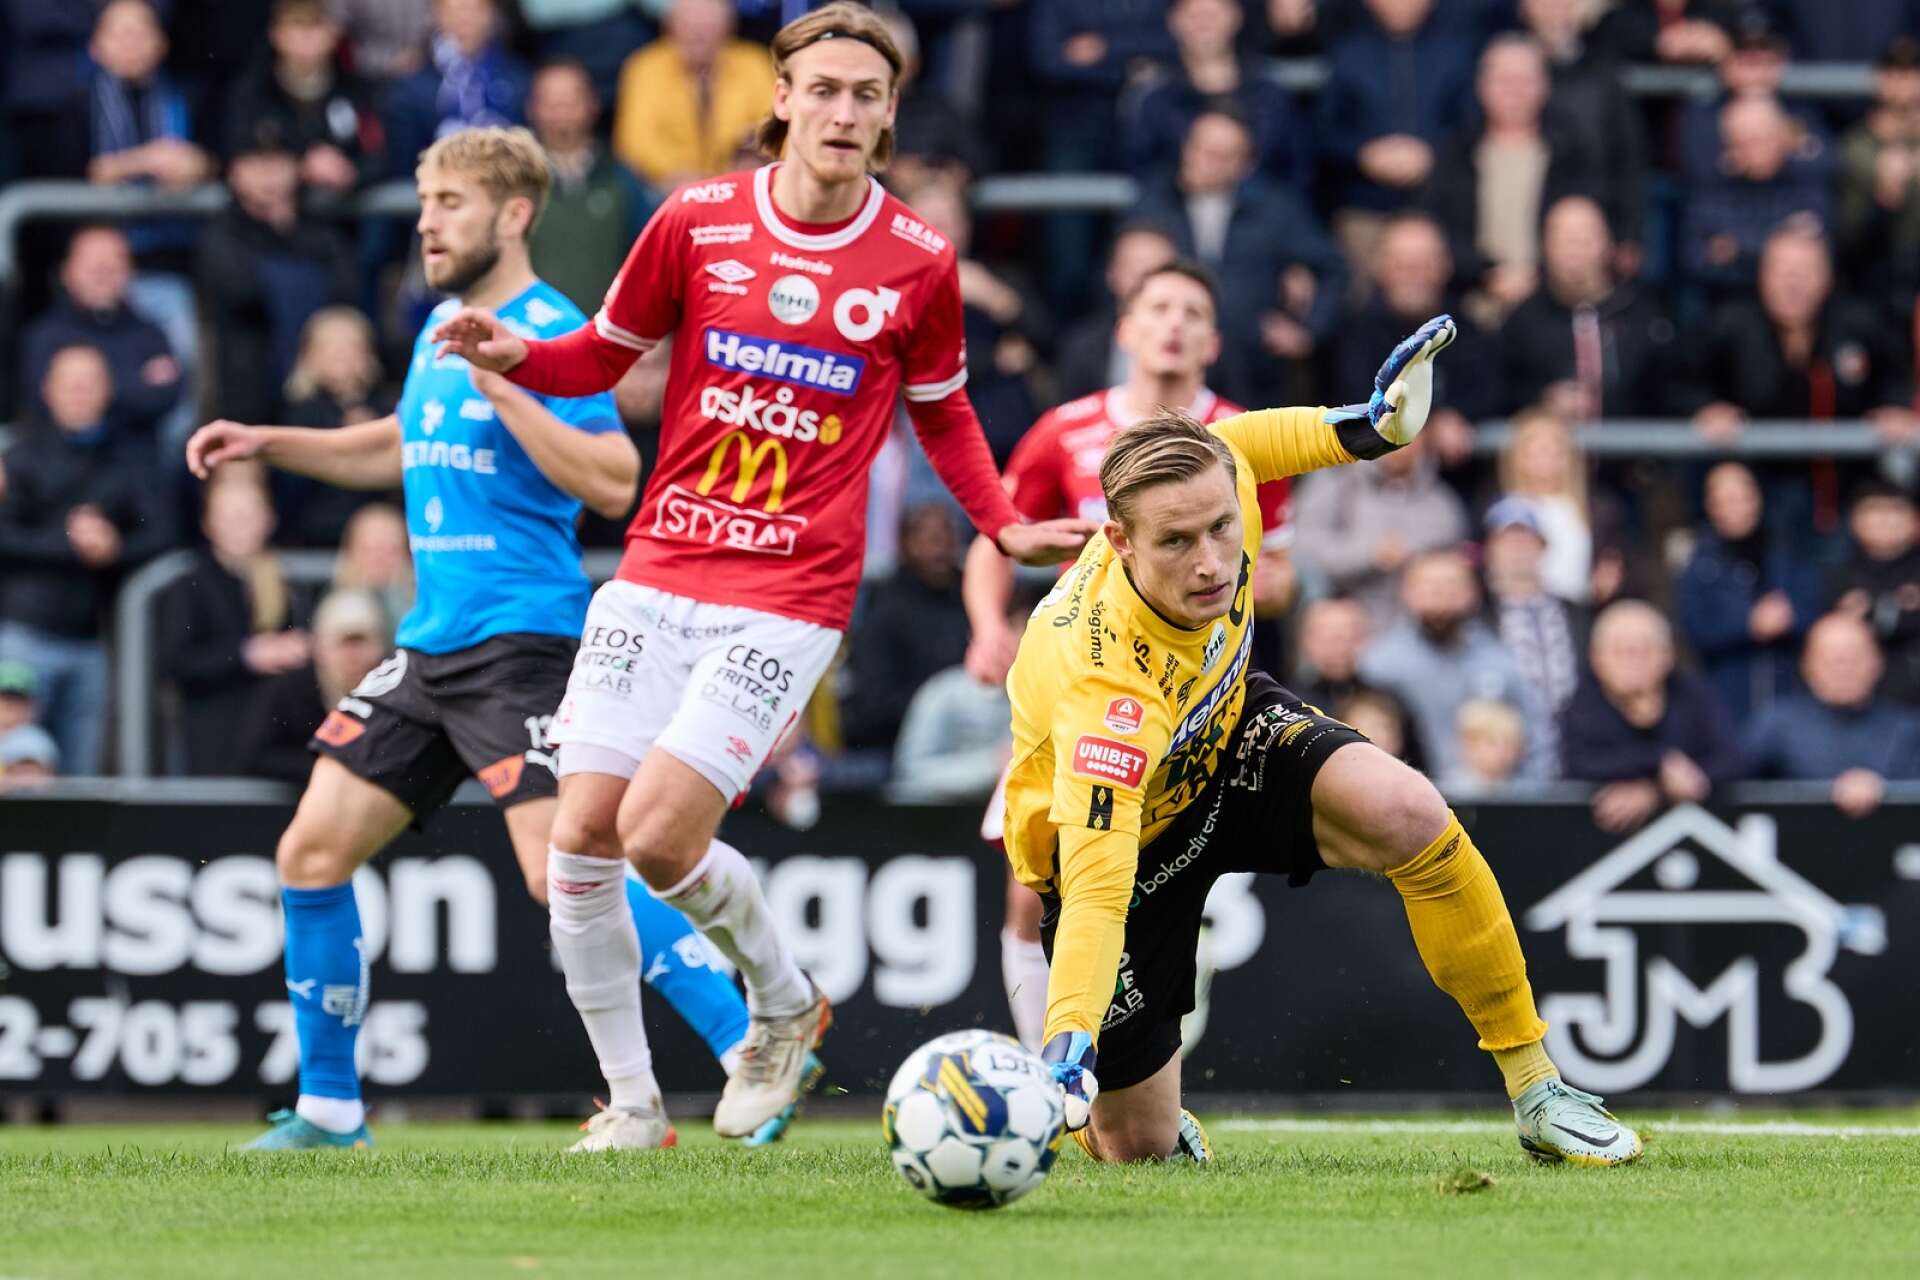 Sondre Rossbach spelade en huvudroll när Degerfors IF fick med sig en poäng från Halmstad.